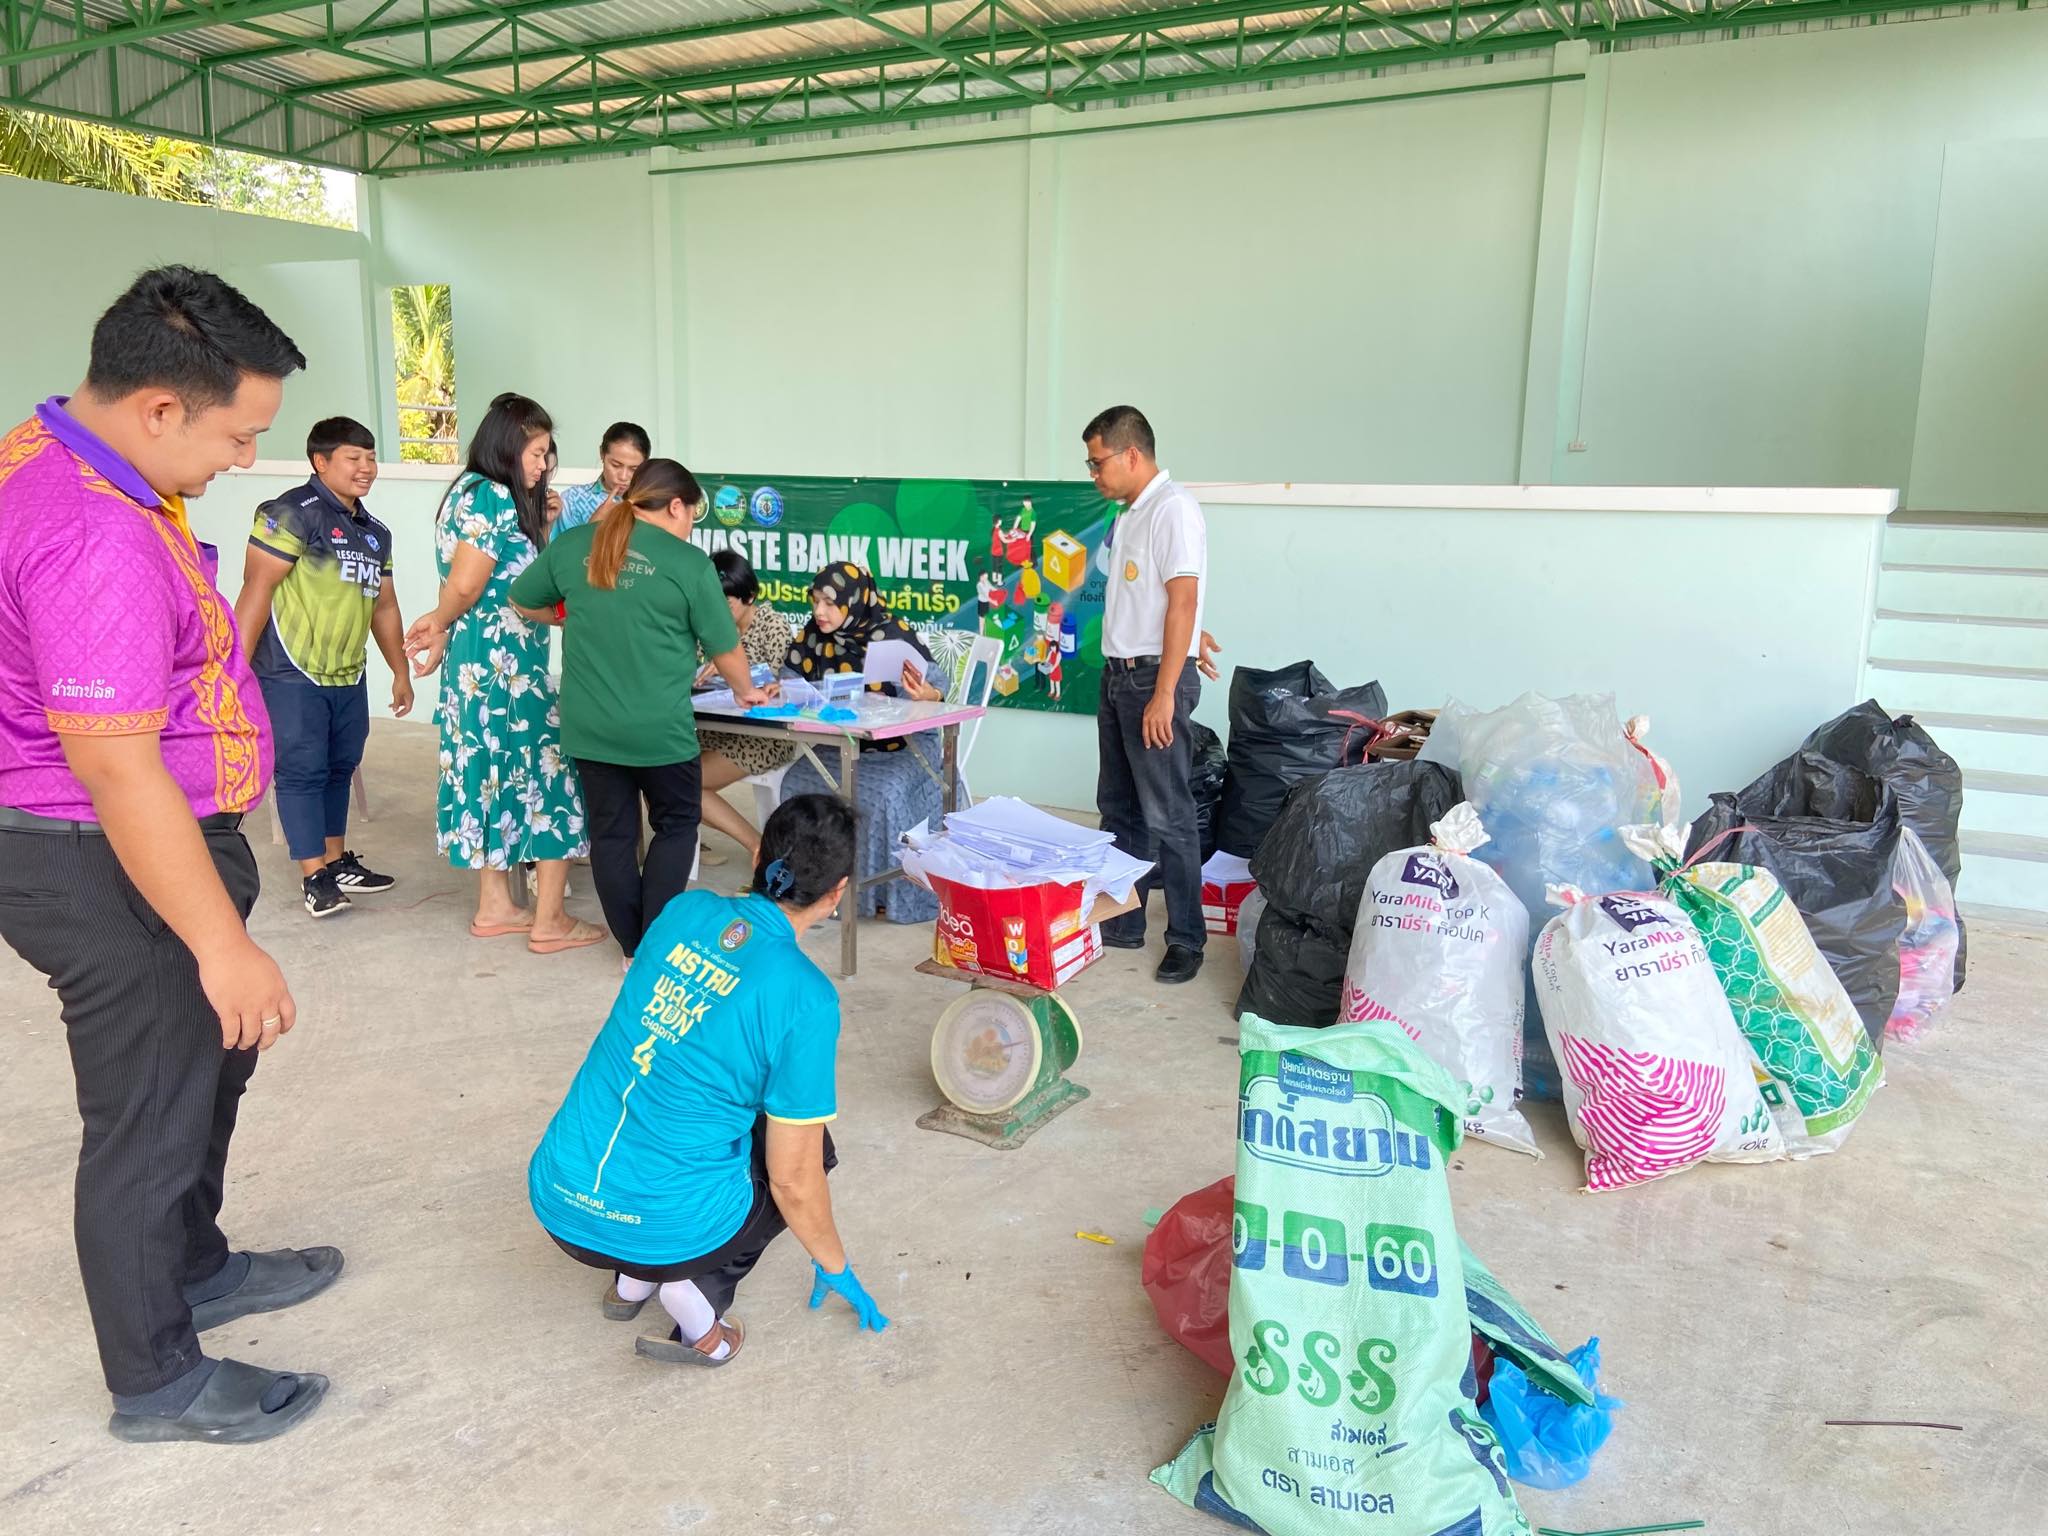 วันพุธ ที่ 24 เมษายน 2567 เวลา 10.30 น. องค์การบริหารส่วนตำบลกะลาเส ได้ดำเนินกิจกรรมขับเคลื่อนต่อเนื่องธนาคารขยะ "MOI Waste Bank Week - มหาดไทย ปักธงประกาศความสำเร็จ ๑ องค์กรปกครองส่วนท้องถิ่น ๑ ธนาคารขยะ" ทำการรับซื้อขยะชุมชนครั้งที่  2 ณ องค์การบริหารส่วนตำบลกะลาเสโดยมีประชาชนนำขยะรีไซเคิลมาขาย เพื่อเป็นรายได้จากการขายขยะ